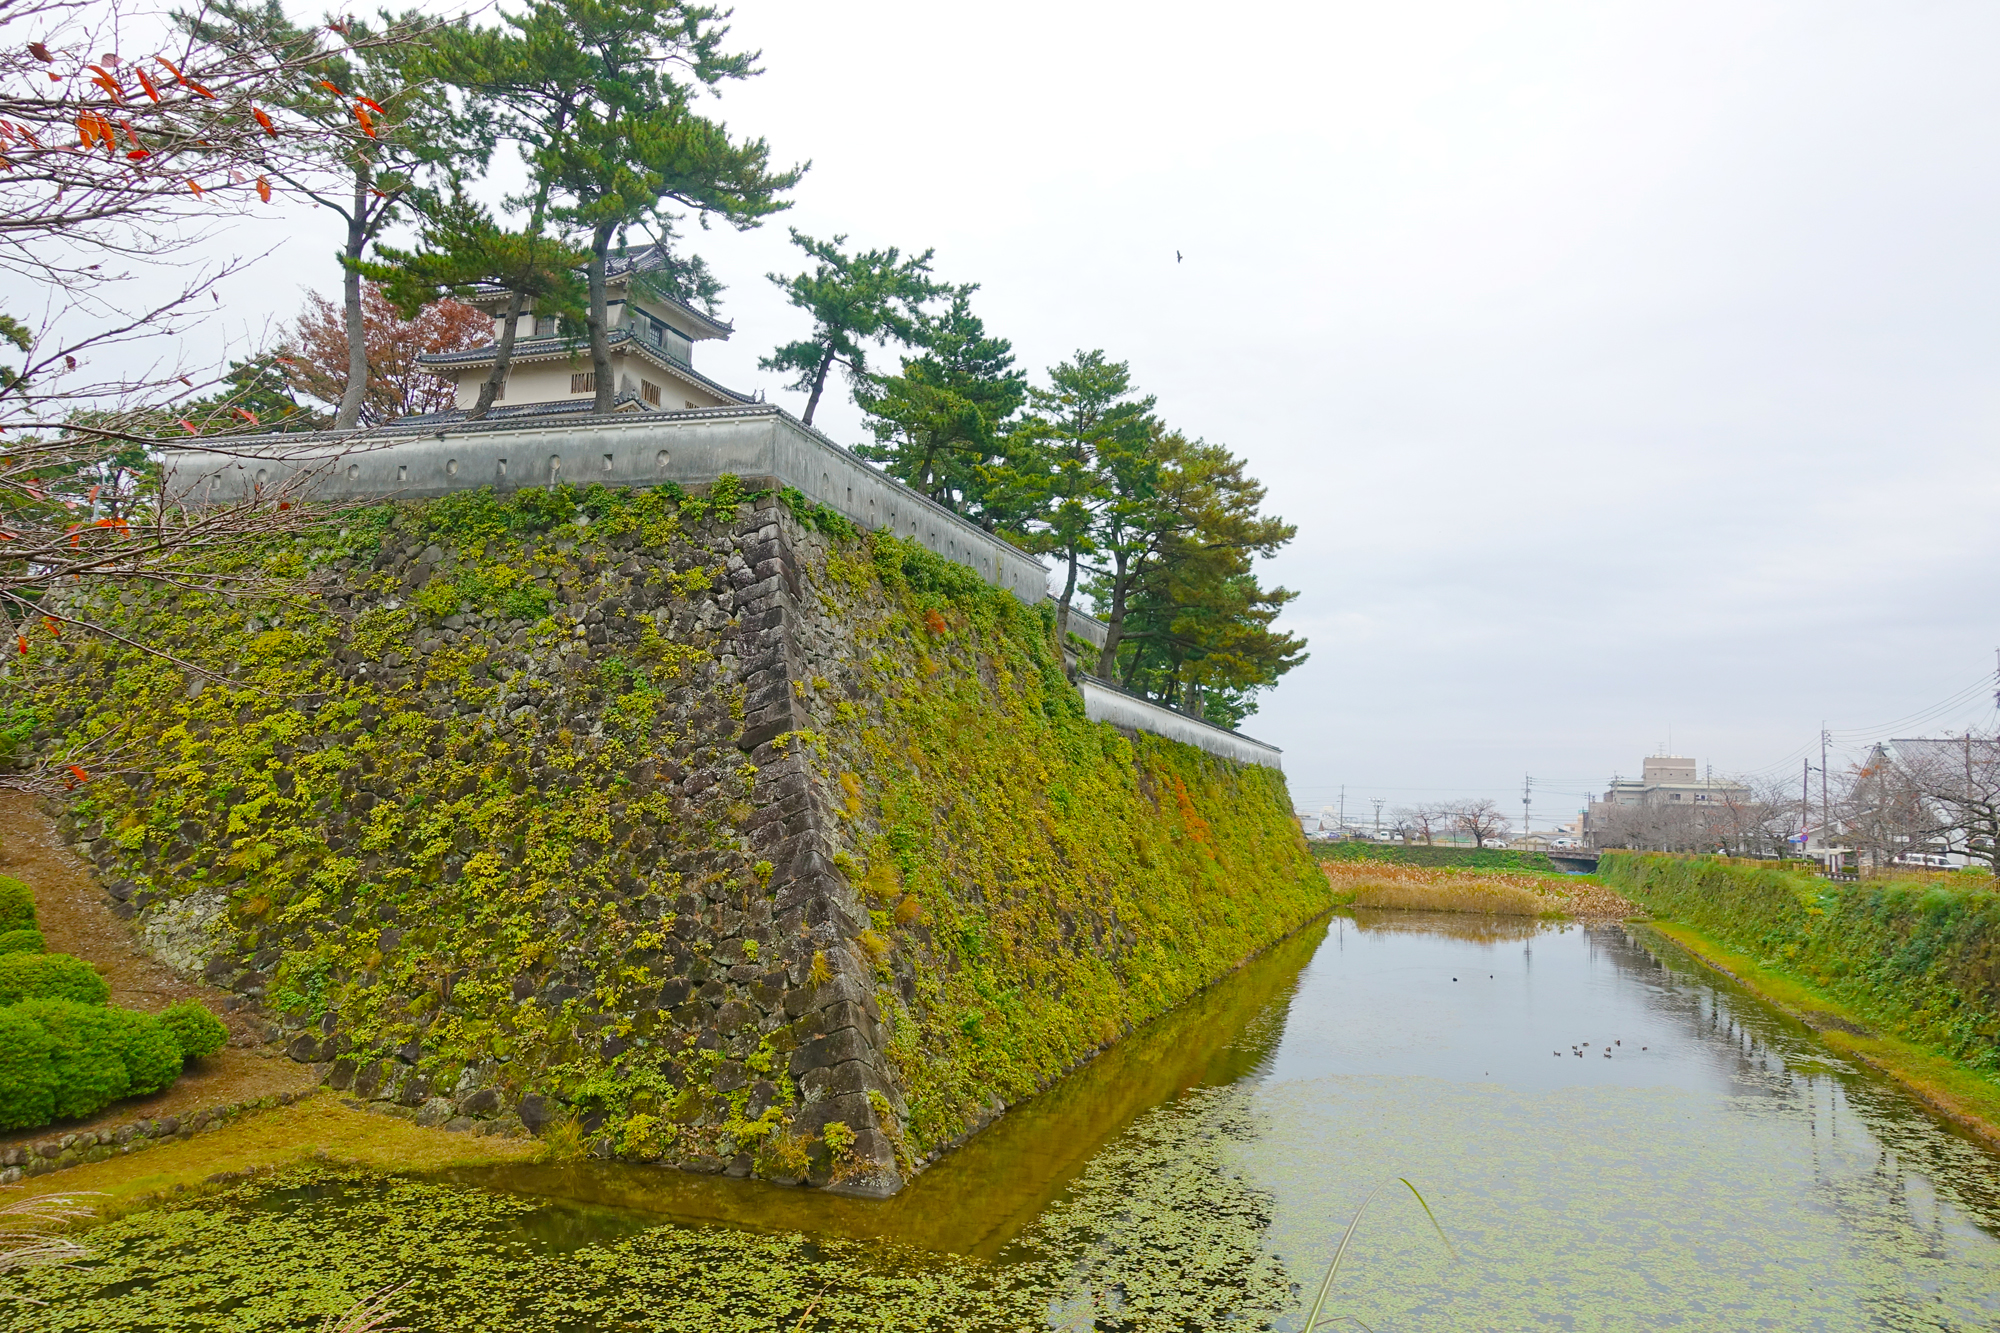 岛原城 一揽岛原城风光  岛原城就在姬松屋对面，在明海边，是一座日式城堡，高而坚固的石桓。水堀围绕着